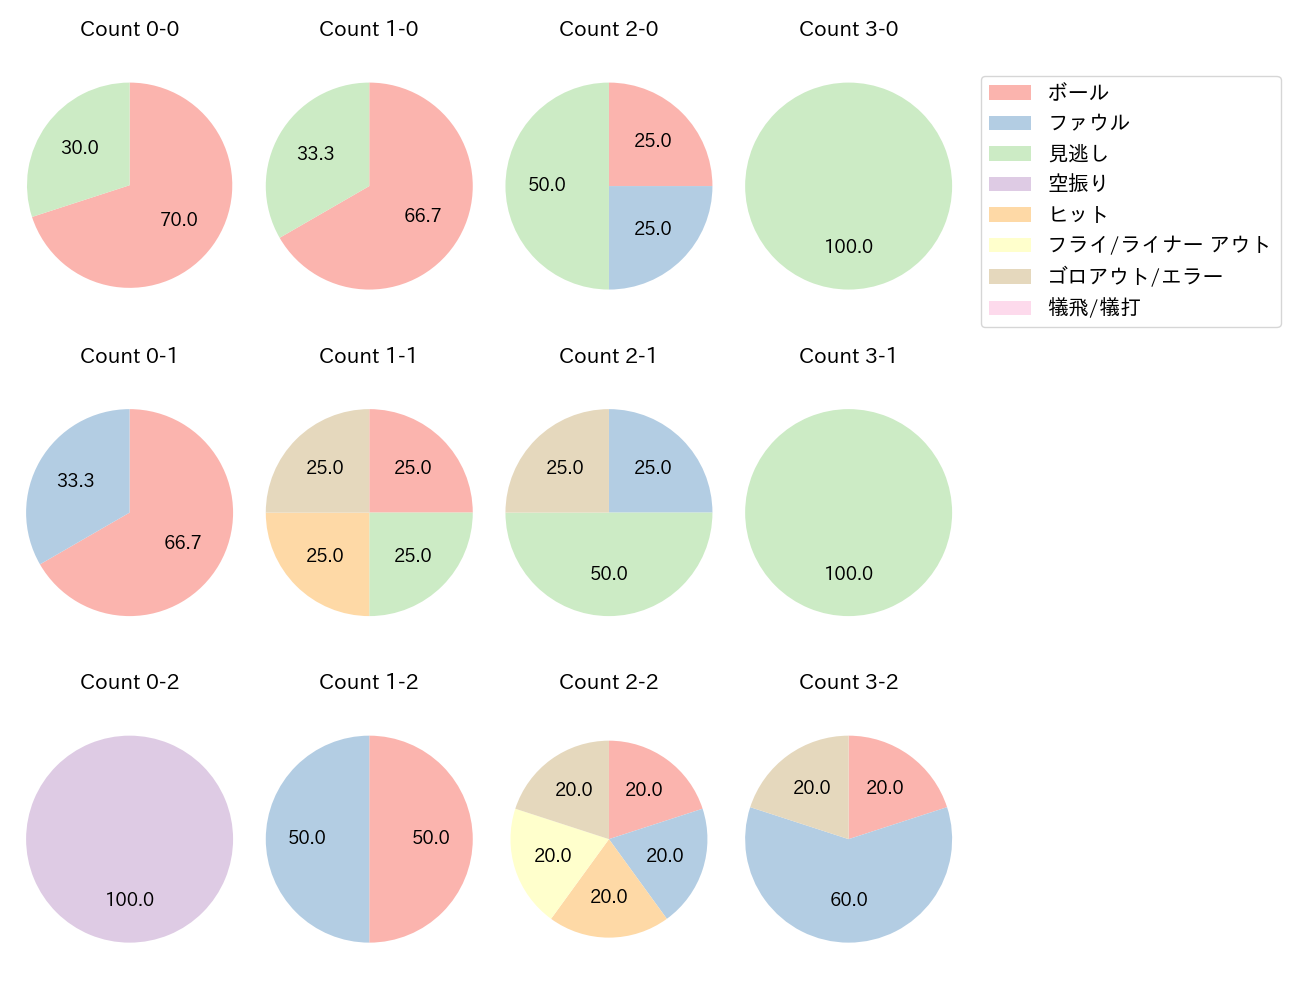 鳥谷 敬の球数分布(2021年5月)